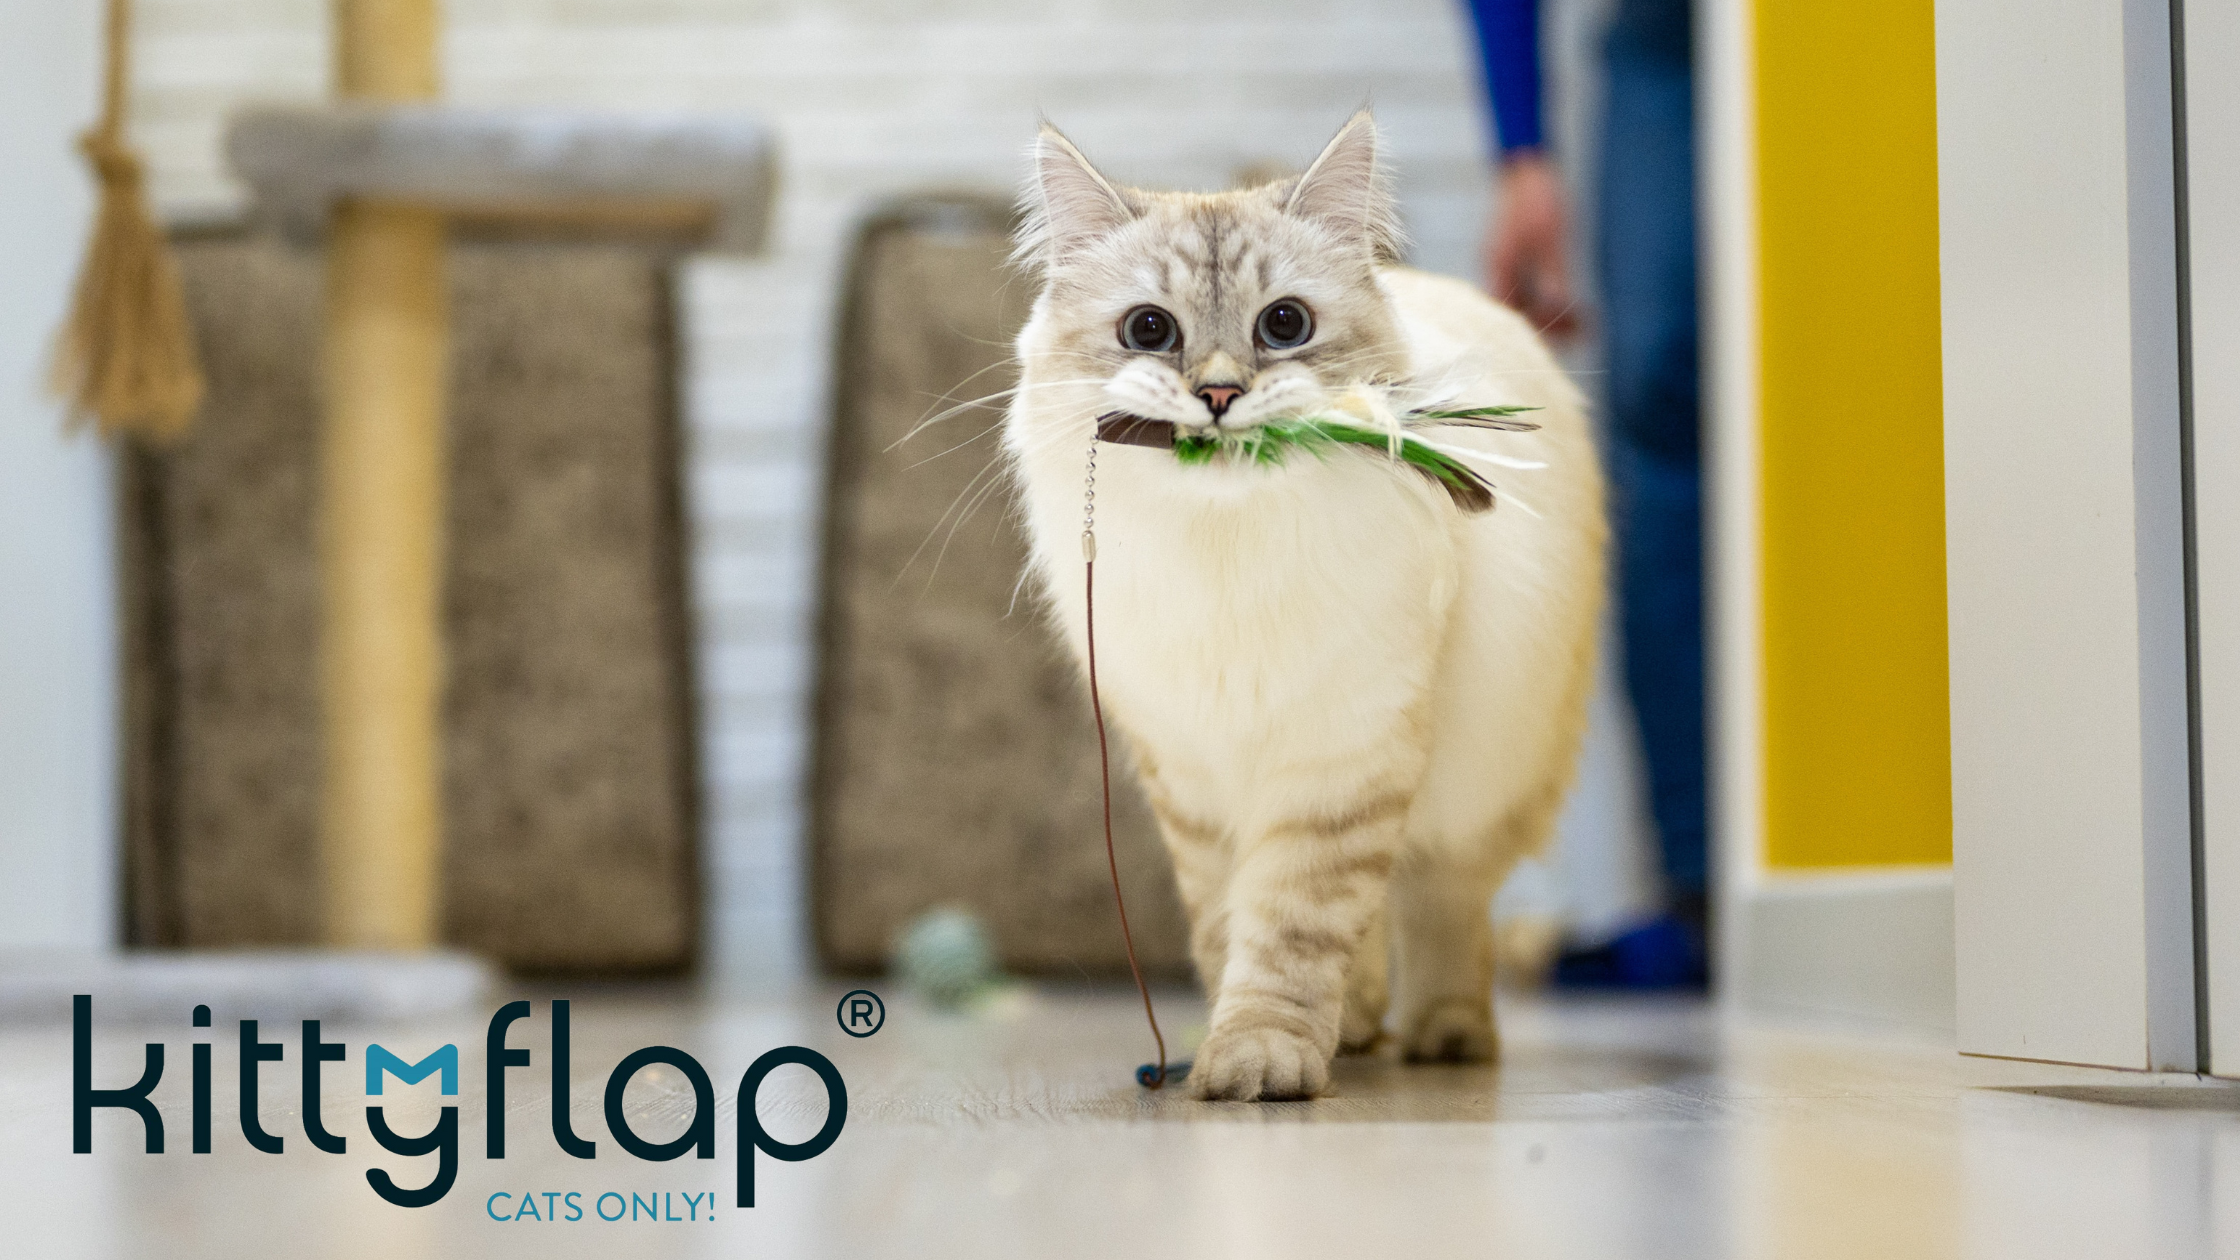 Anwendungsfall KittyFlap: Kein Katz-und-Maus-Spiel dank smarter Katzenklappe